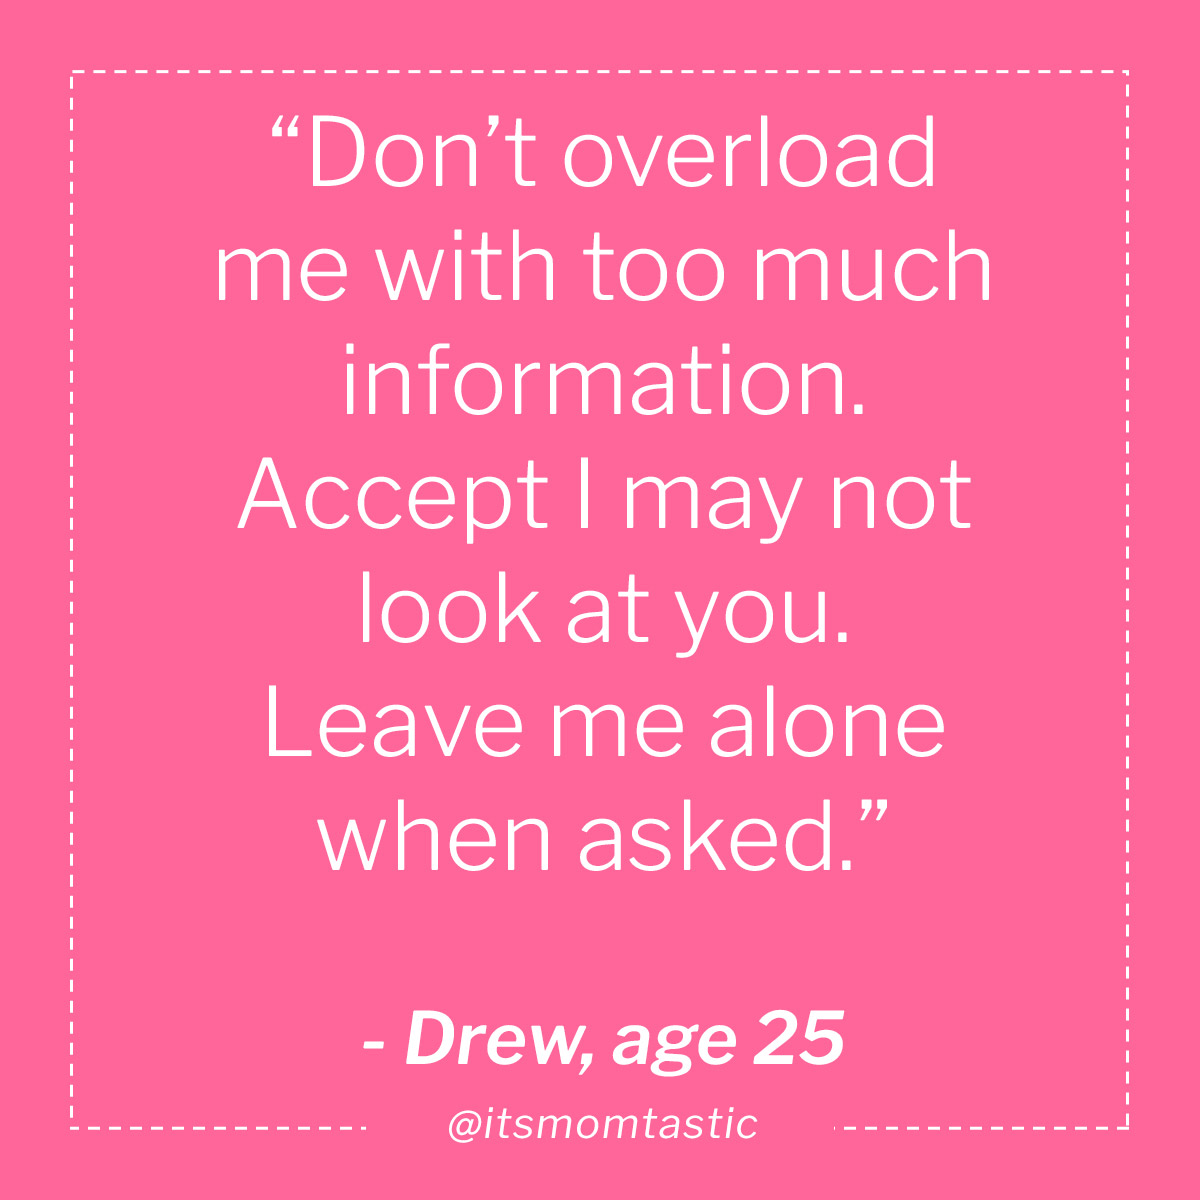 Drew, age 25